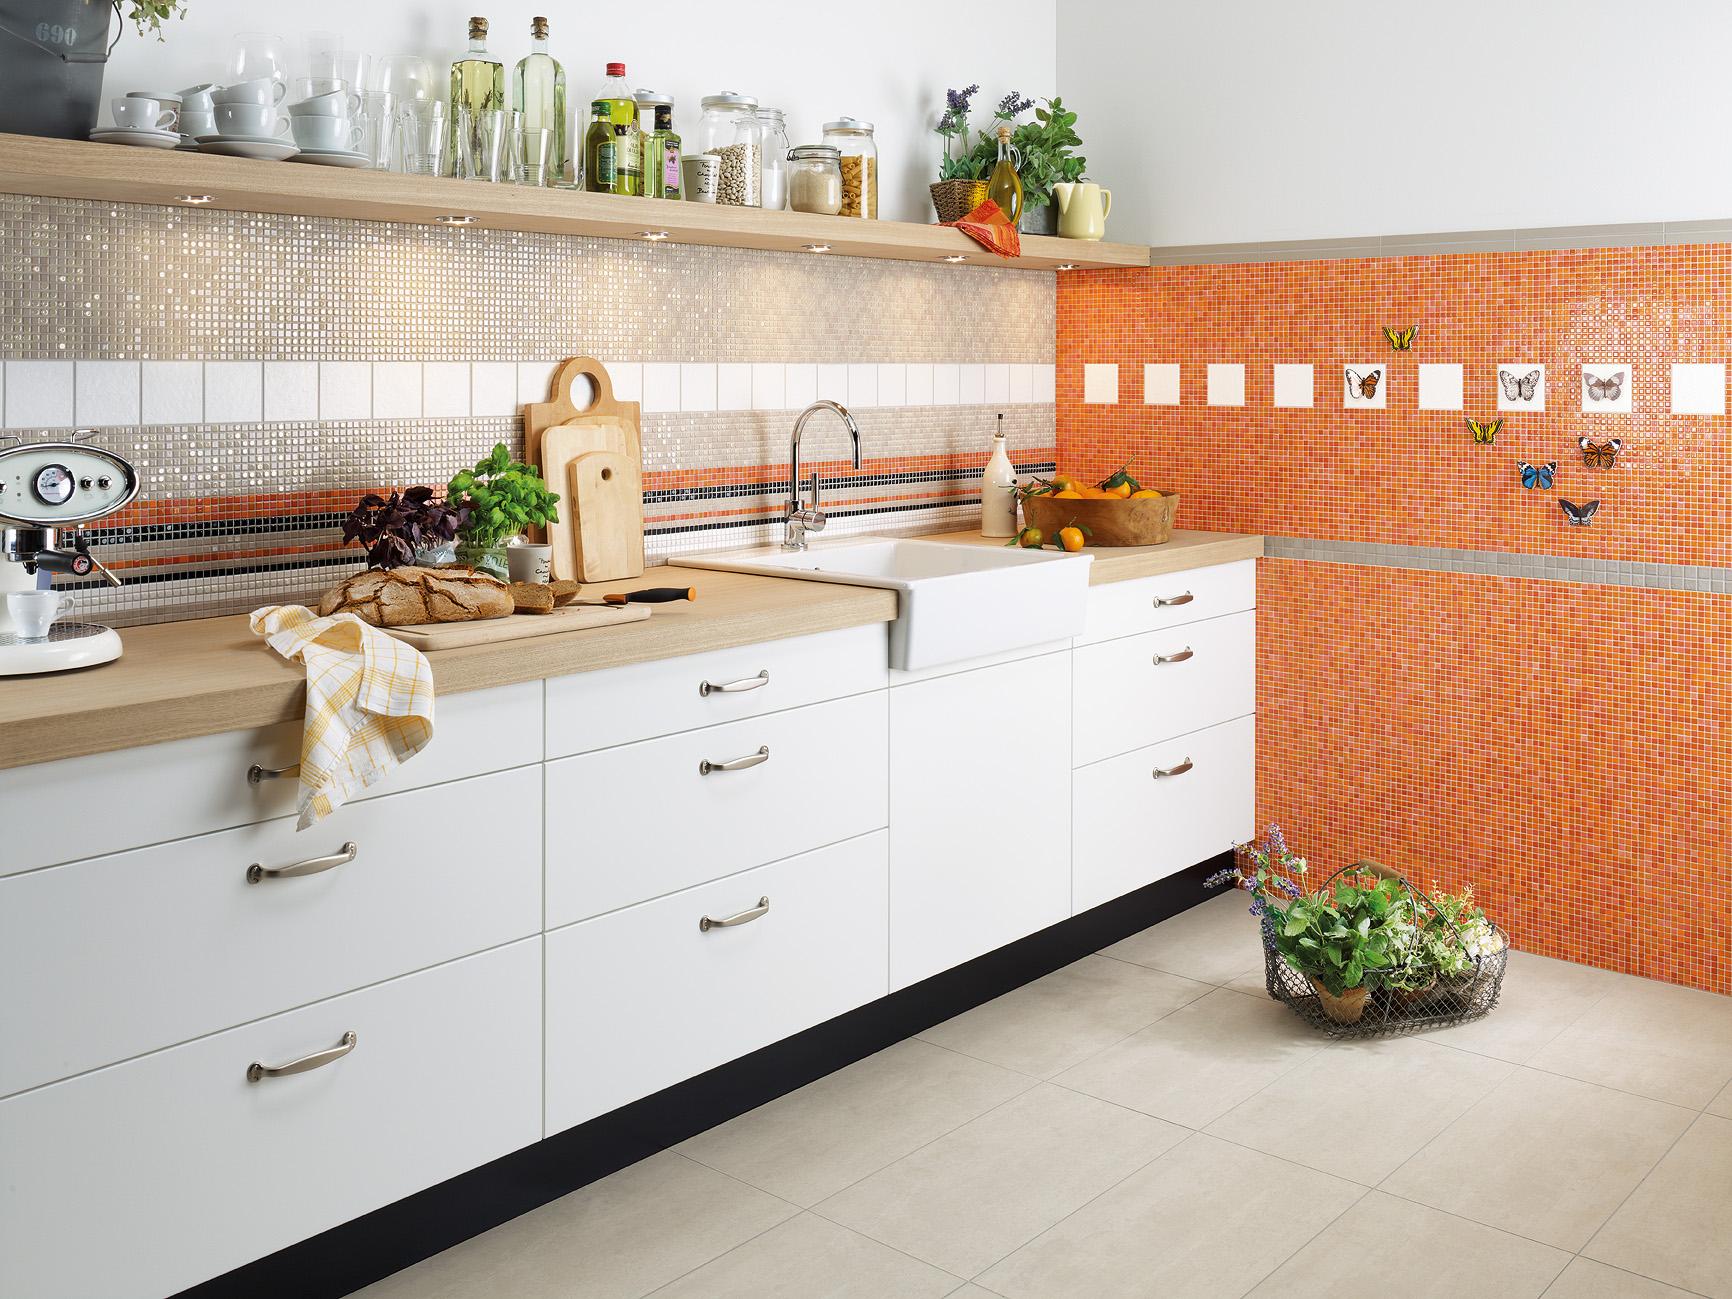 Küchengestaltung in Beige und Orange #fliesen #mosaikfliesen #küchengestaltung #frühlingsdeko ©Jasba Mosaik GmbH